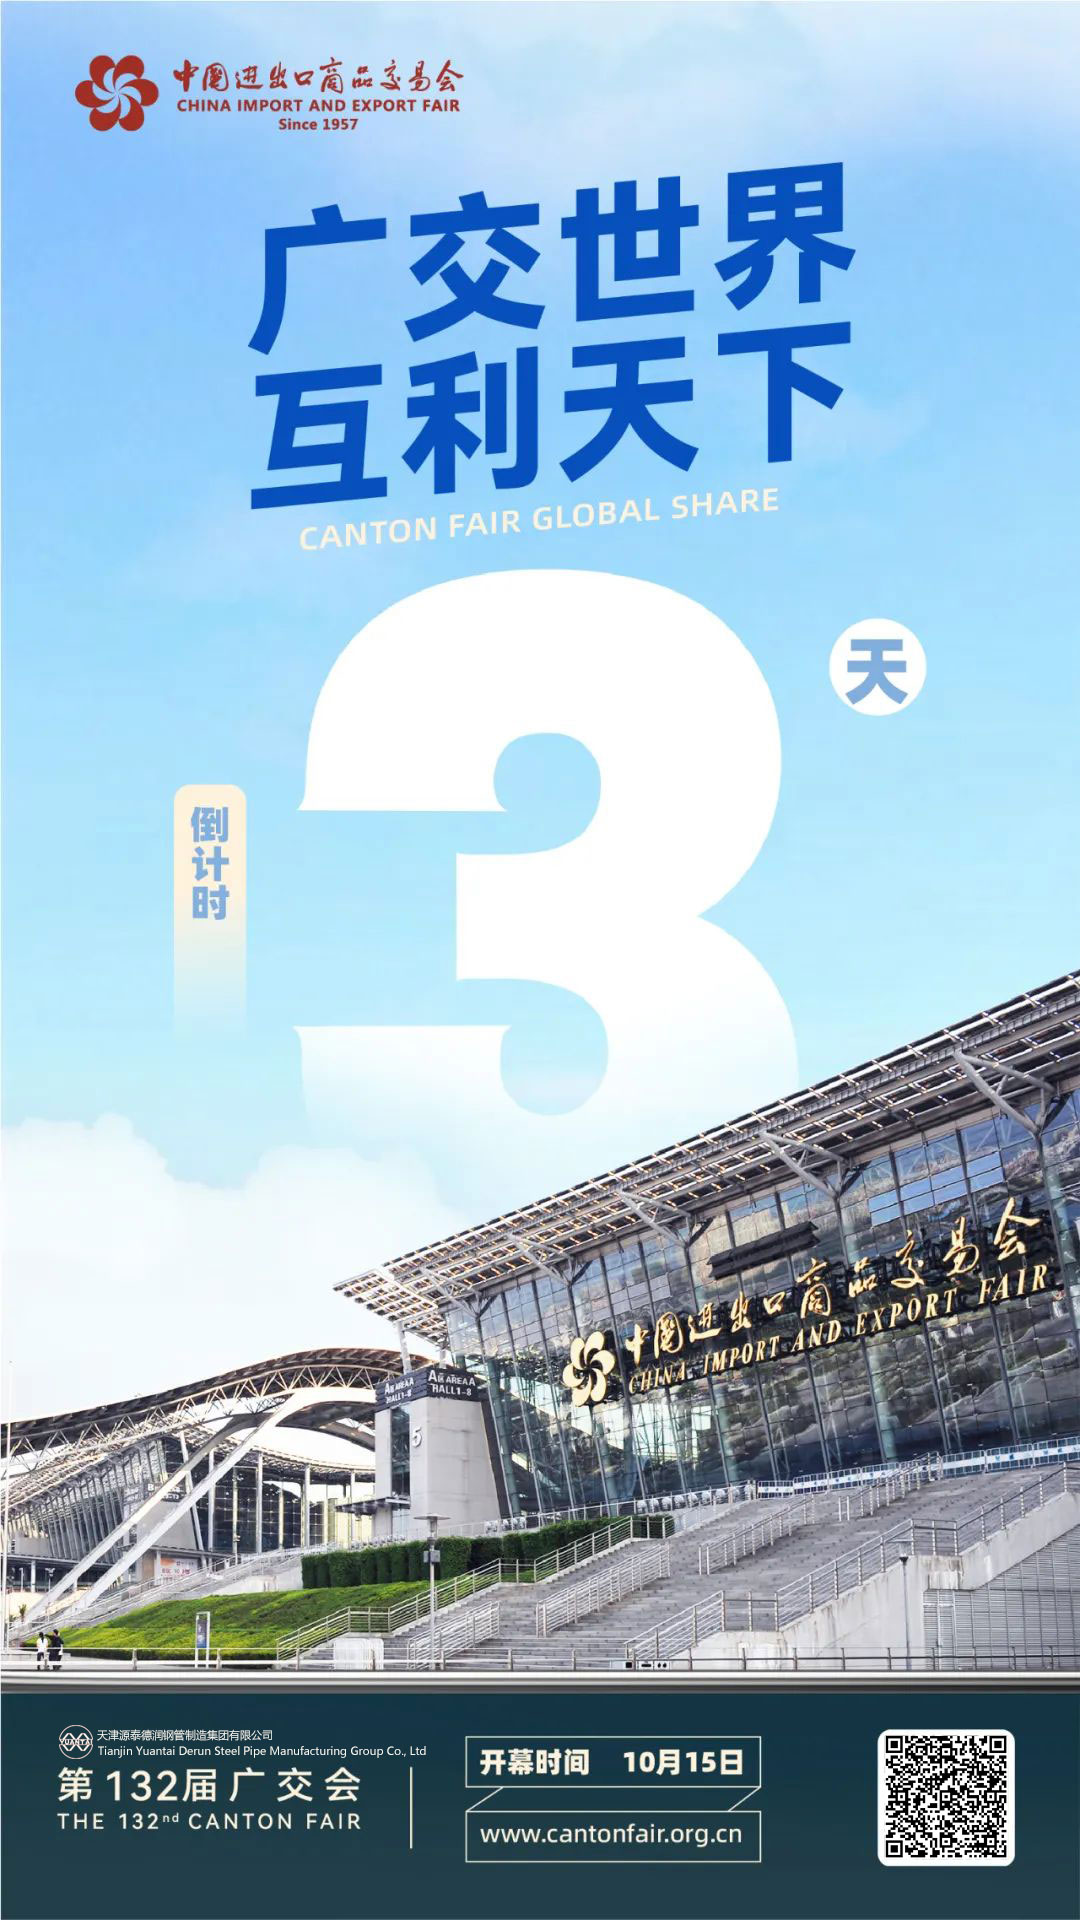 Kantonin 132. messuilla on kulunut kolme päivää – Tianjin Yuantaiderun Steel Pipe Manufacturing Group Co., Ltd.